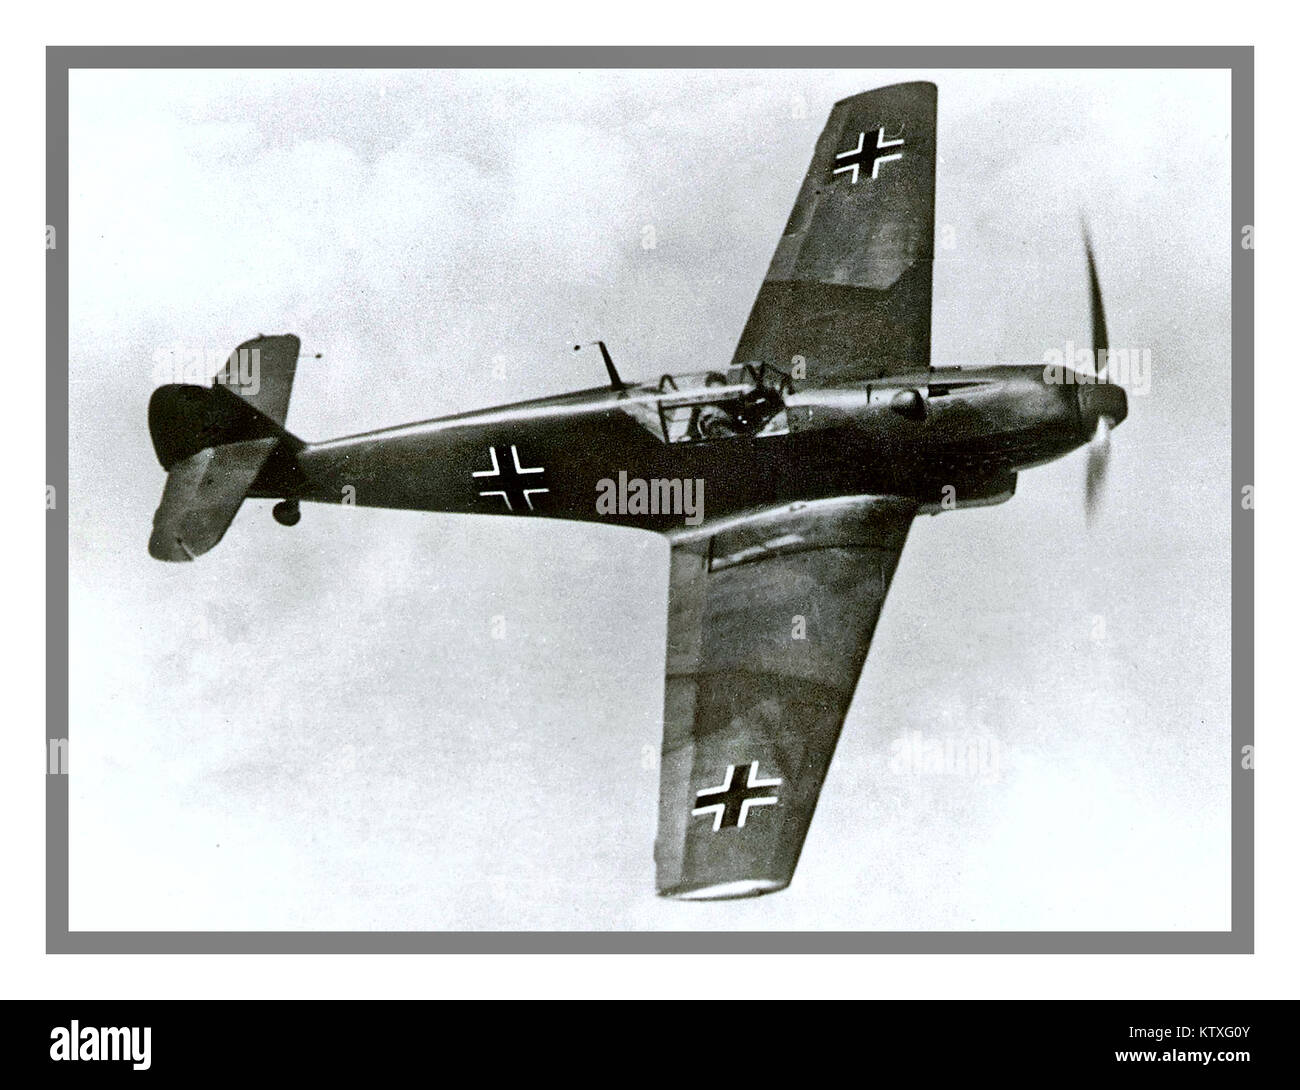 WW 2 Messerschmitt-Bf-109 Kampfflugzeuge von Nazi Deutschland Luftwaffe während der legendären Rückgrat des Weltkrieges 11 1940 von Fighter tritt der Luftwaffe verwendet, aber nicht ganz ein Gleiches für die Schlacht von Großbritannien Spitfire Kampfflugzeug Stockfoto